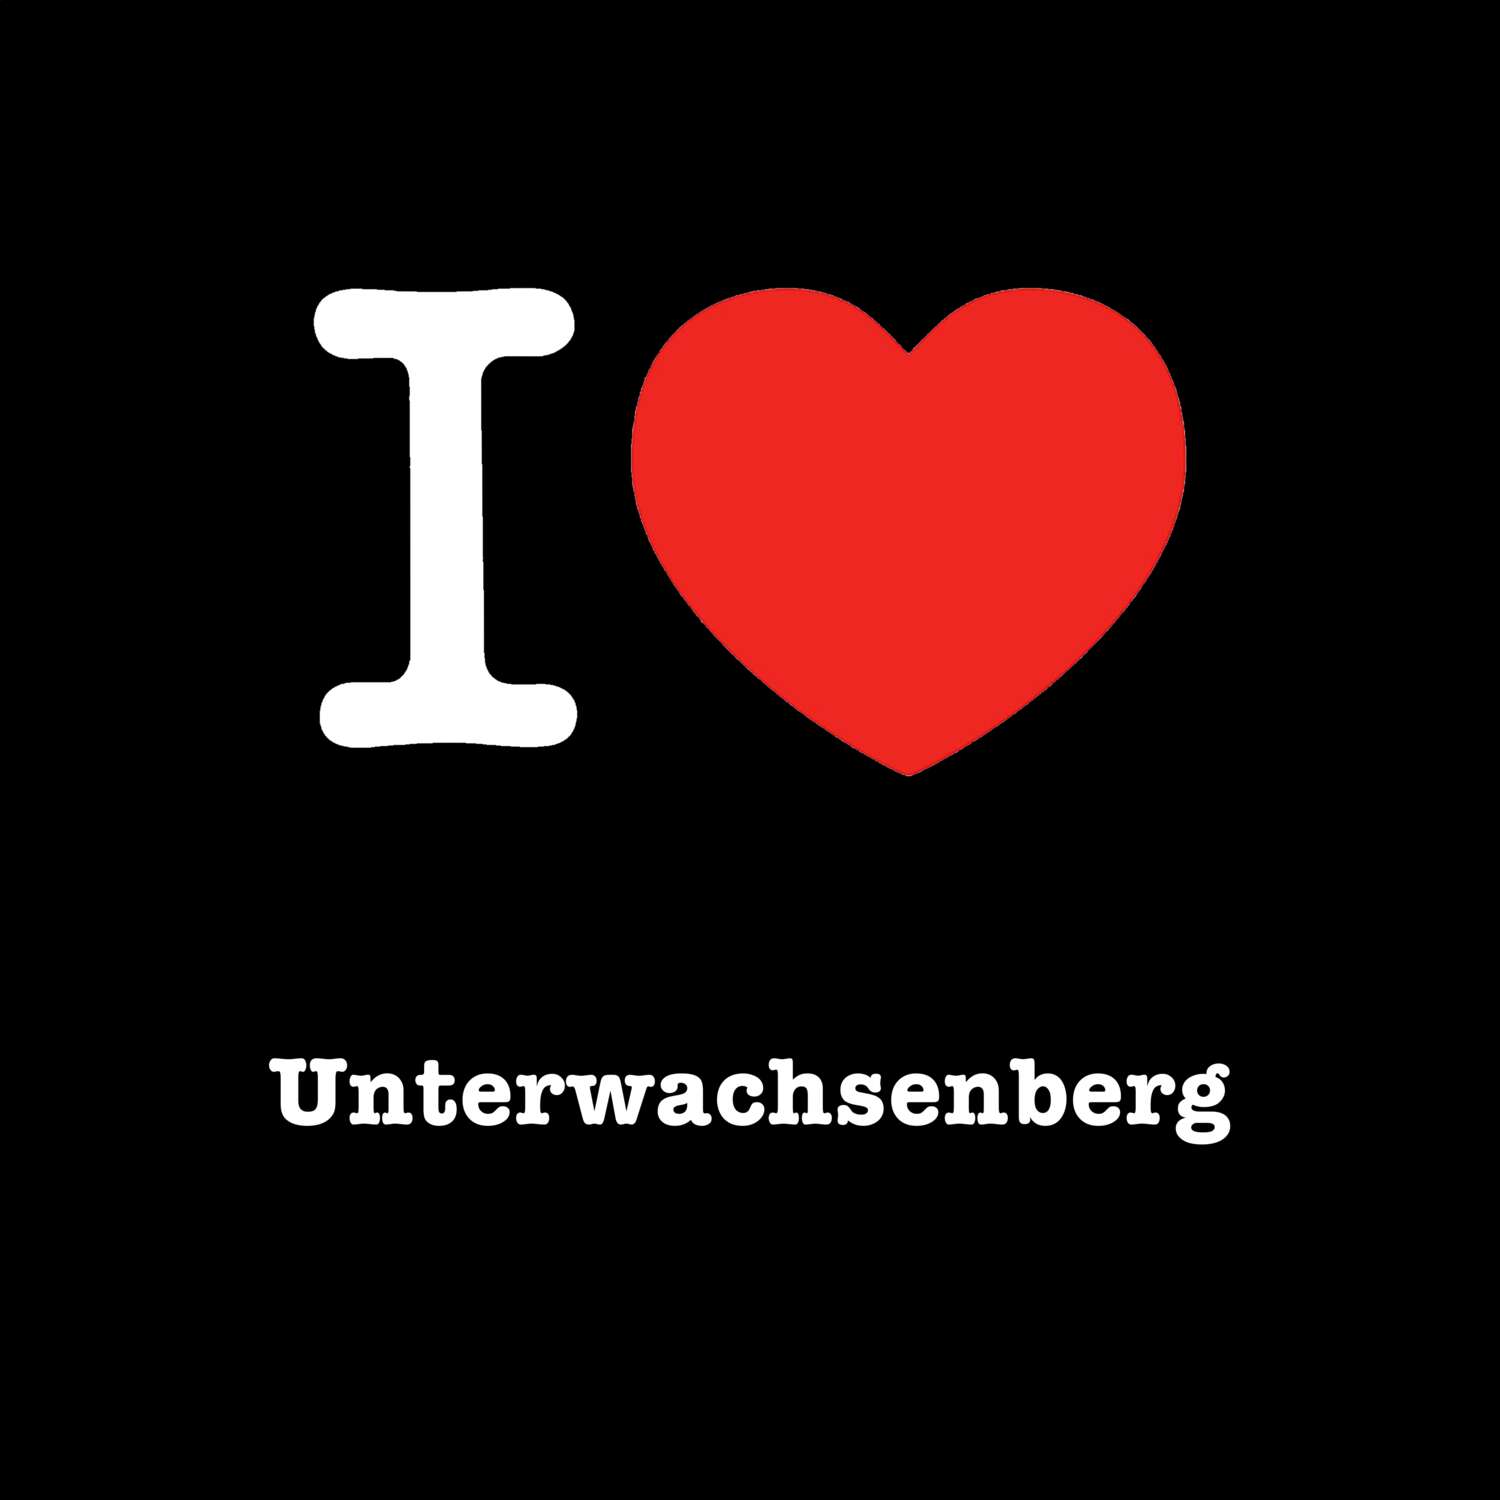 Unterwachsenberg T-Shirt »I love«